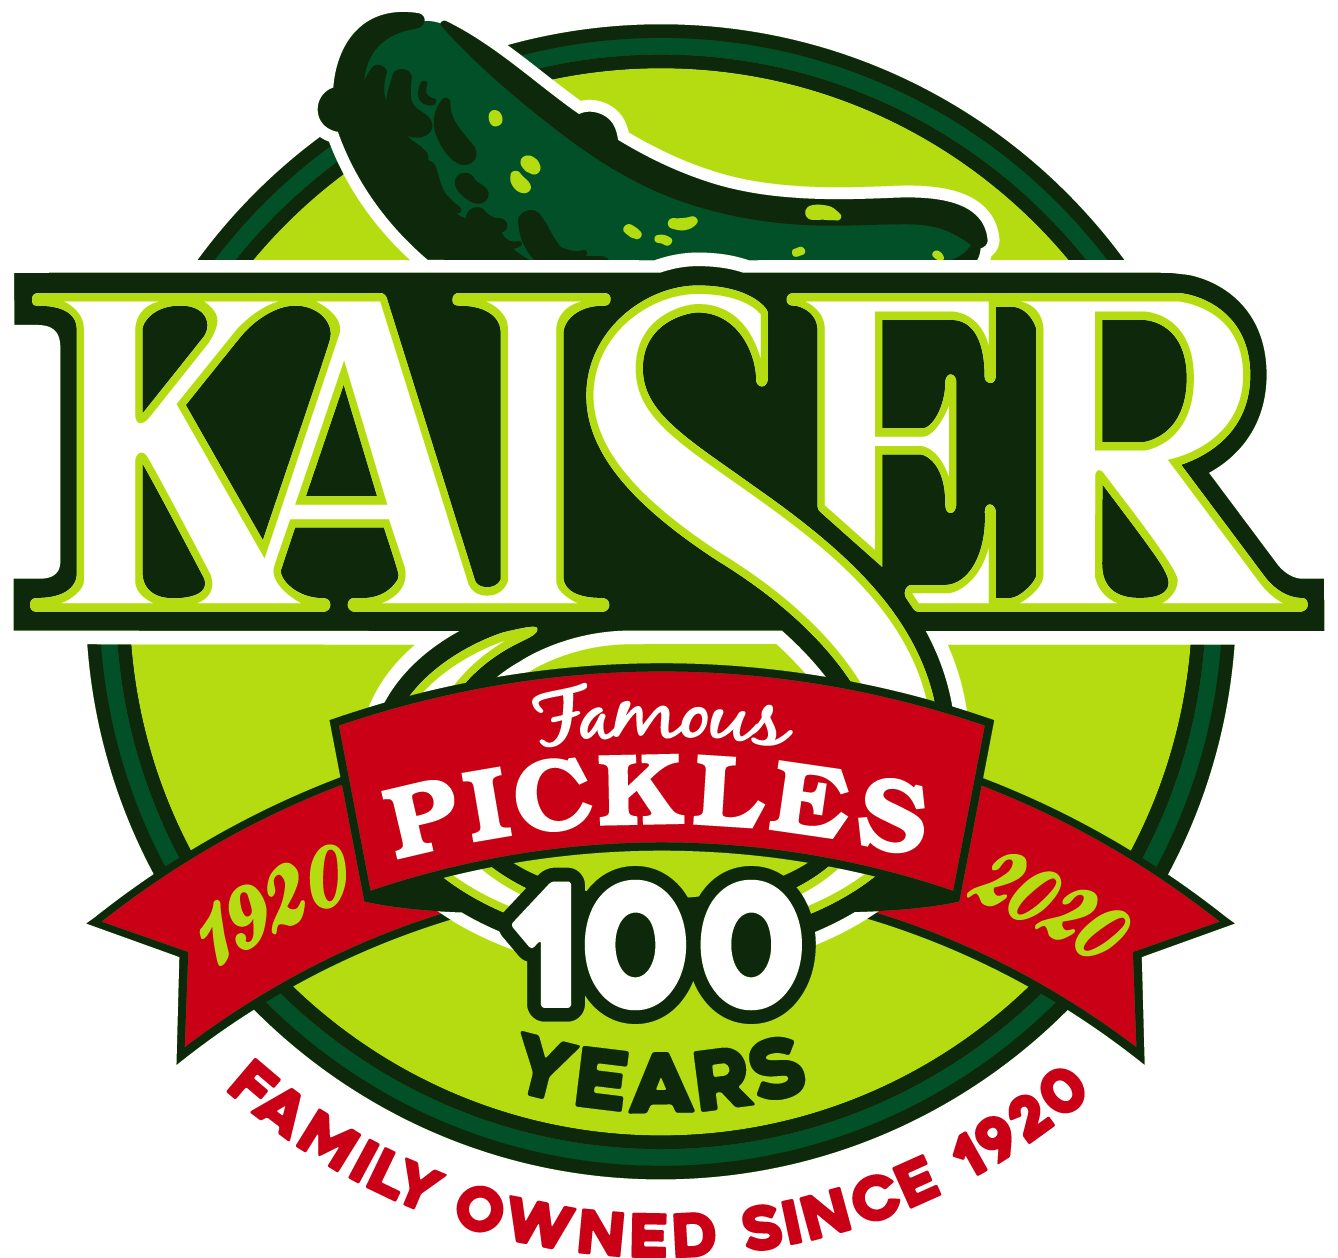 Eddie's Pickles | Heritage & Health | Since 1888